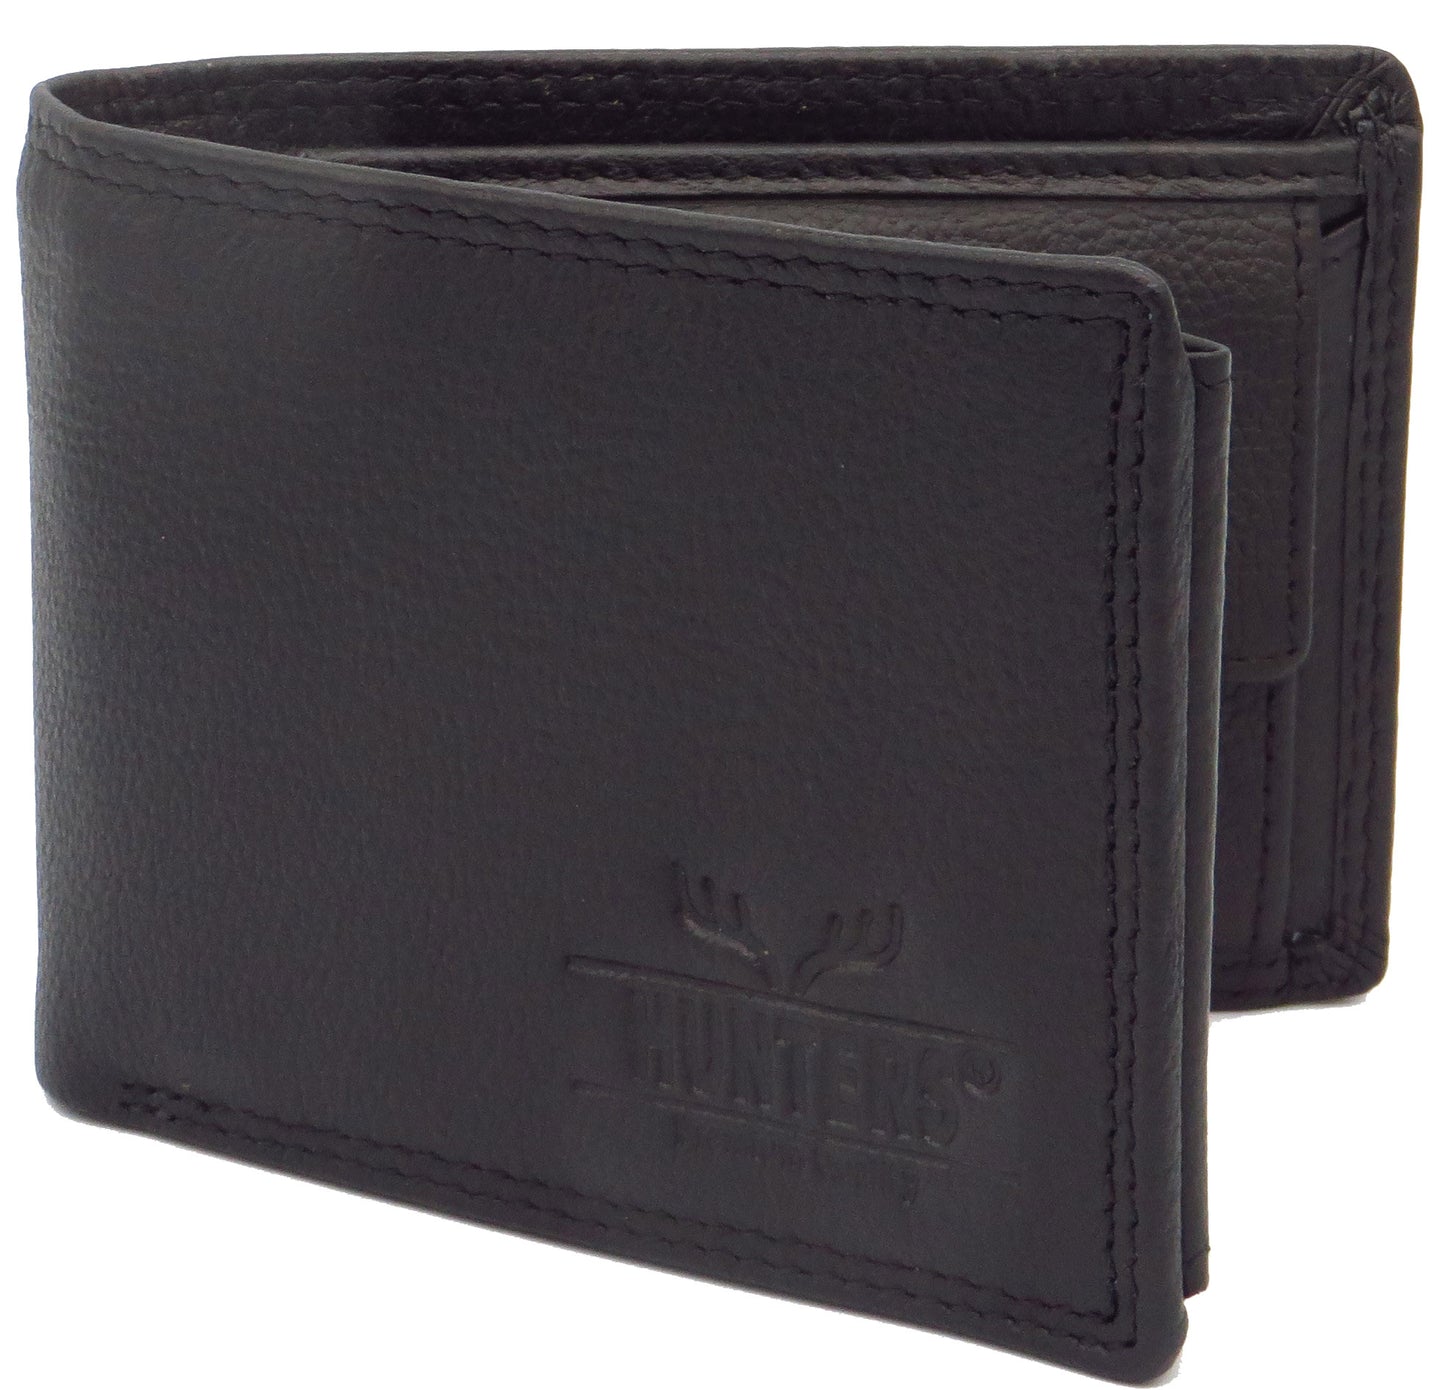 Geldbörse für Herren schwarz Rindsleder Querformat mit RFID Diebstahlschutz MW-240-SNDM